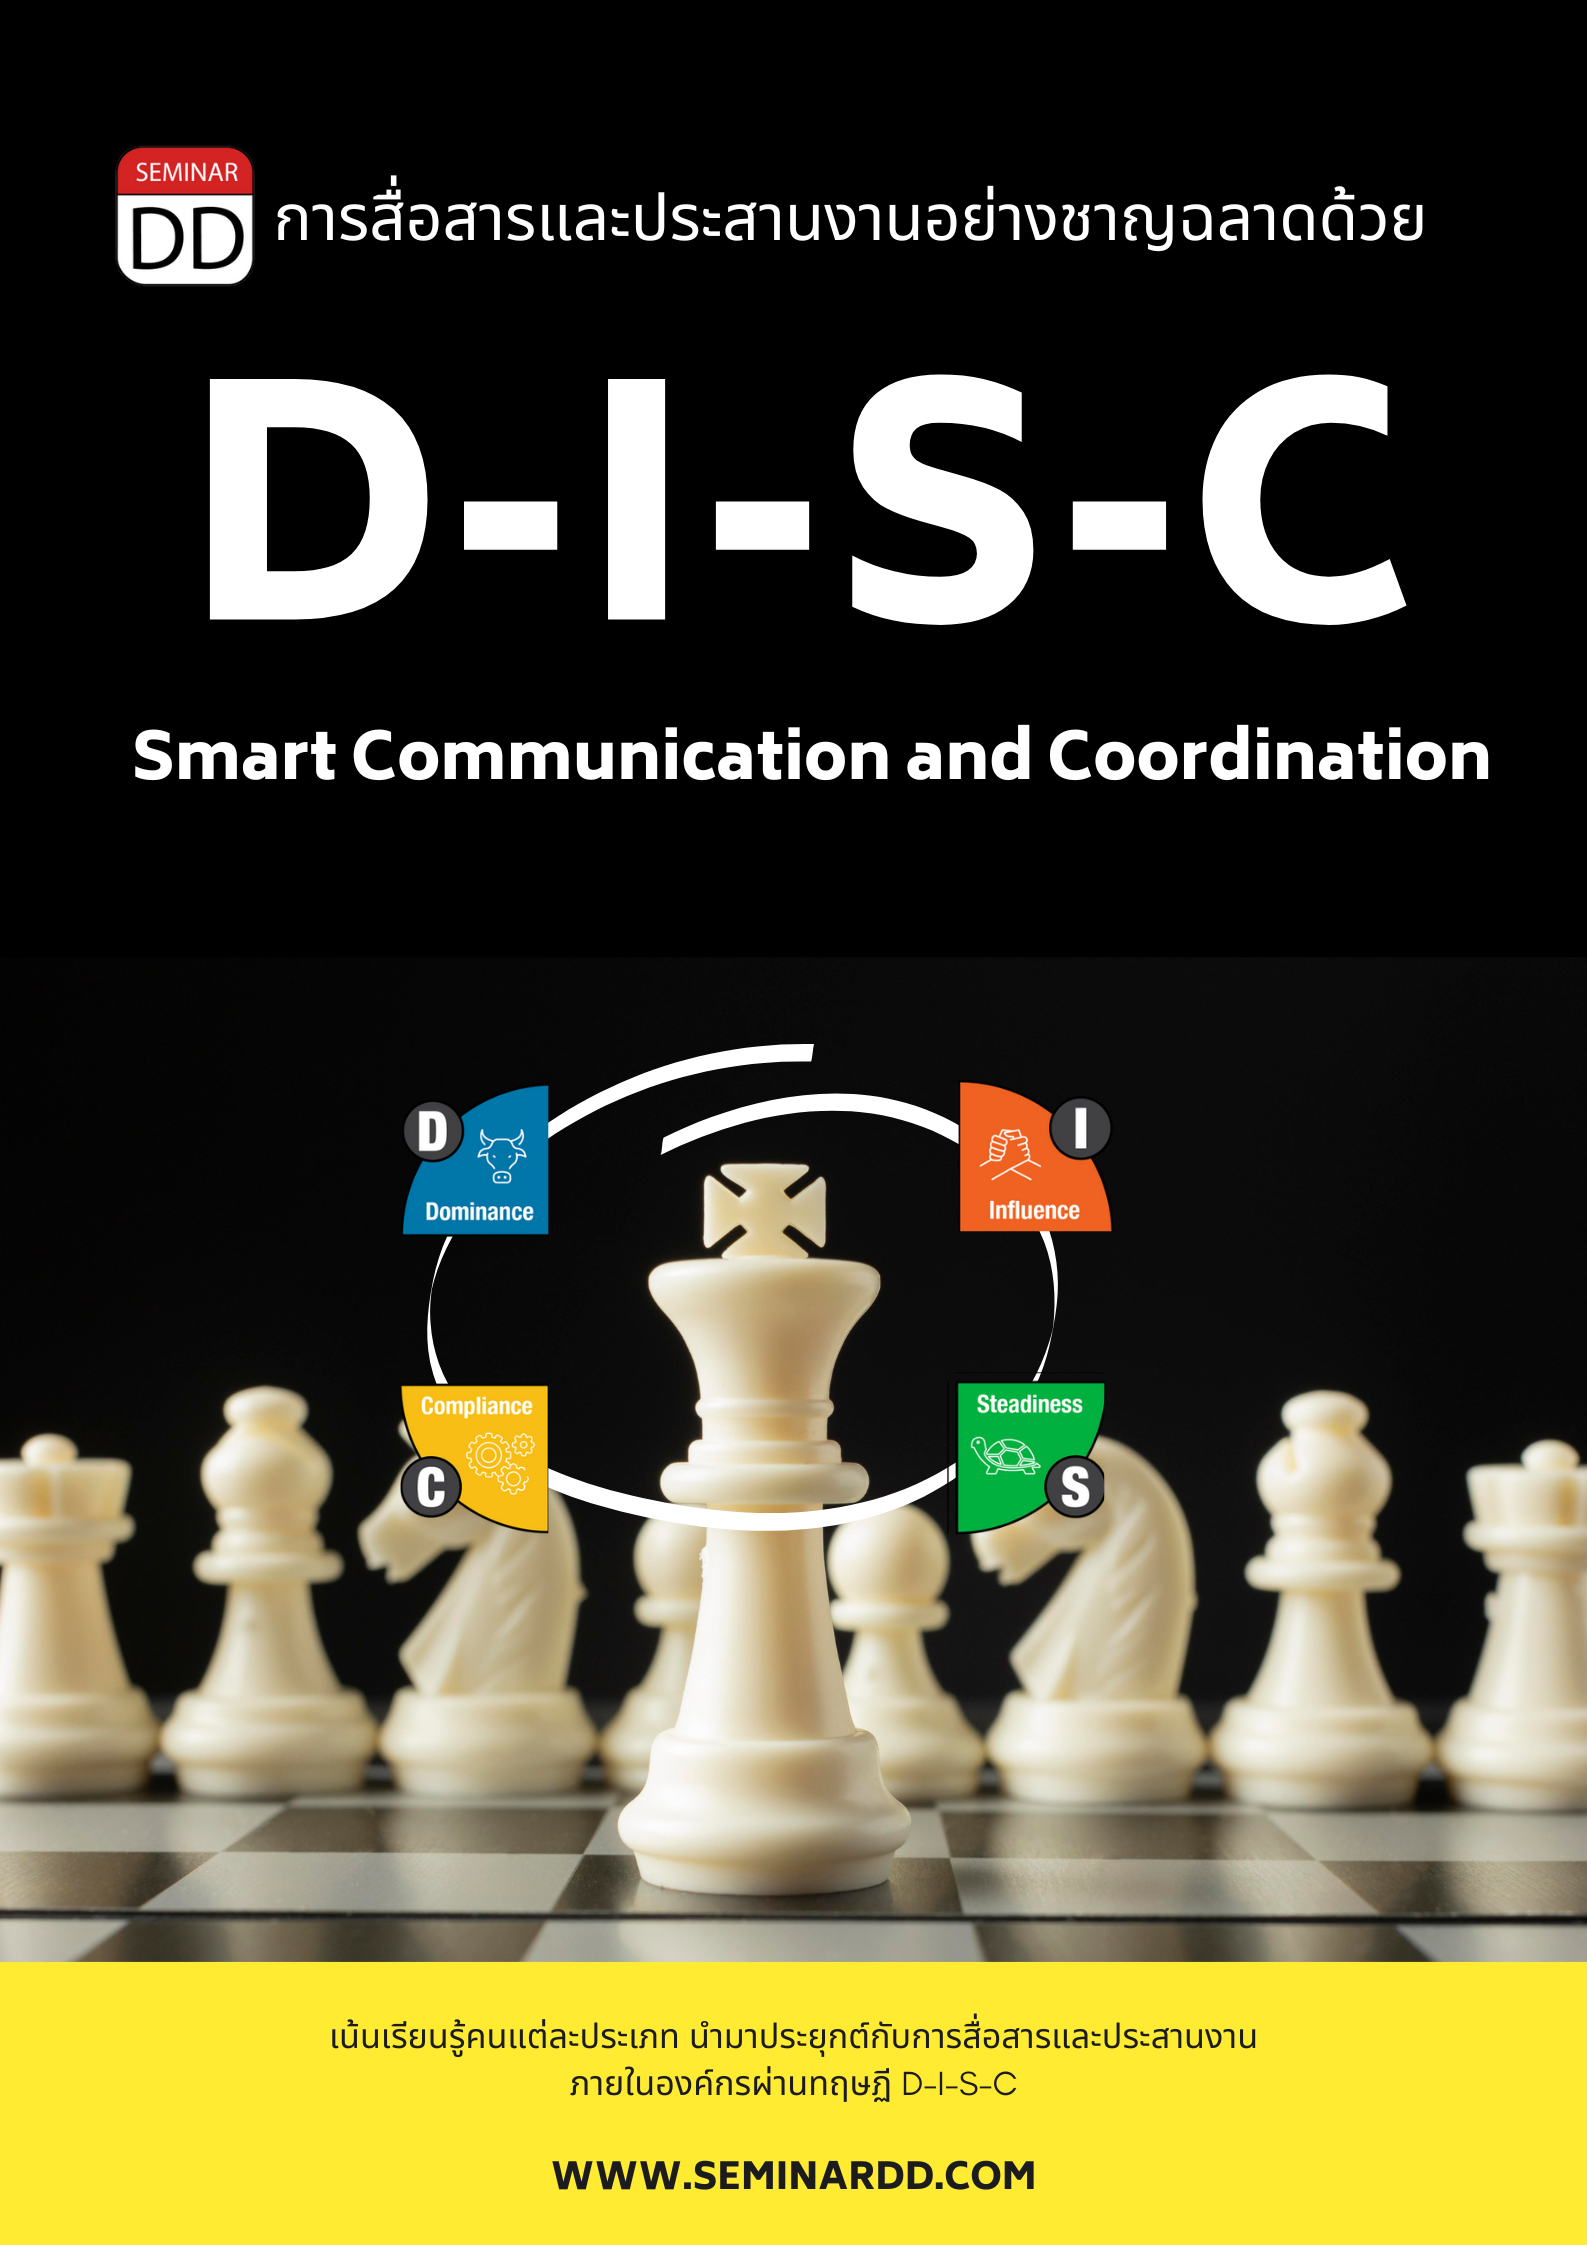 หลักสูตร การสื่อสารและประสานงานอย่างชาญฉลาดด้วย DISC (Smart Communication and Coordination with DISC)